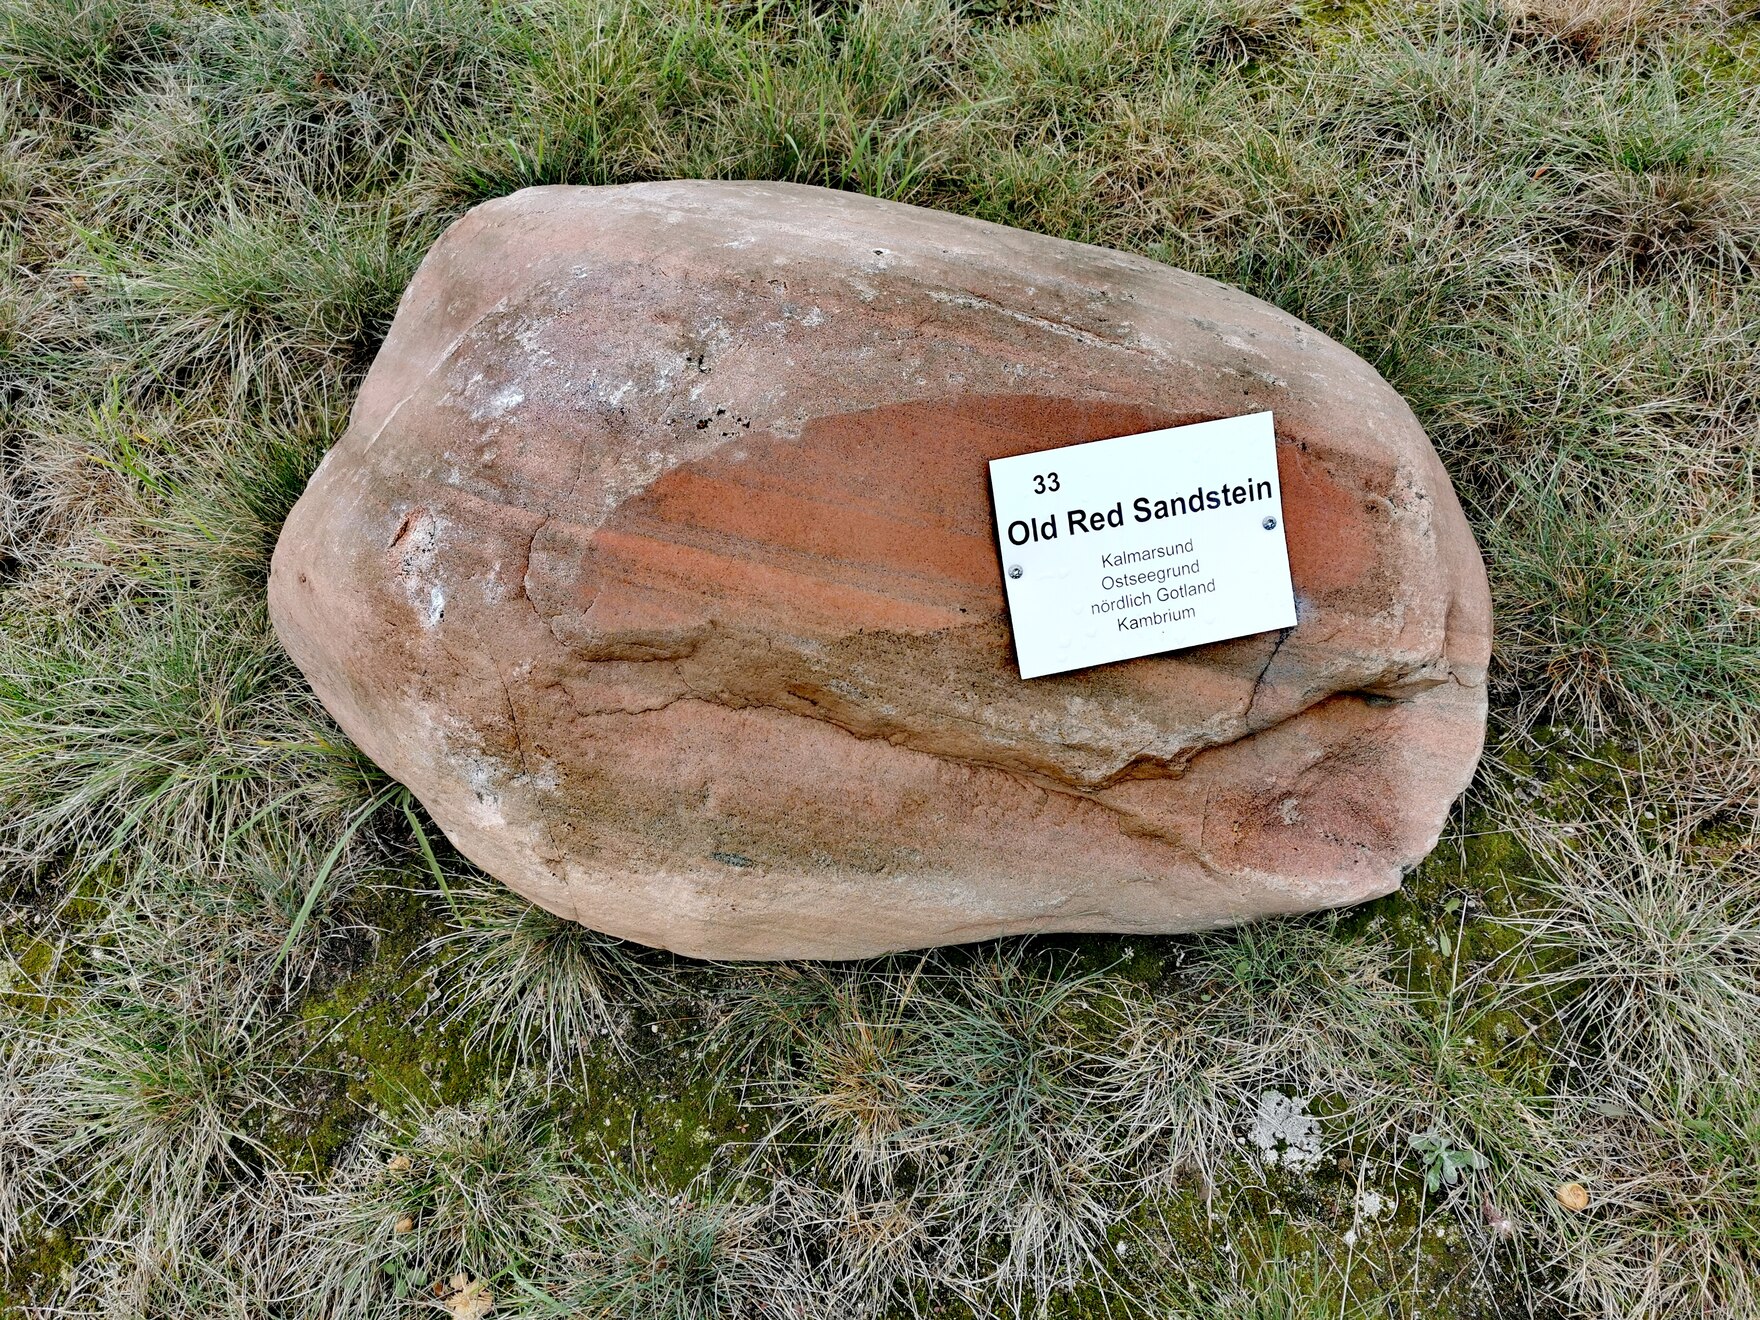 Findling aus rotem Sandstein mit Metallschild, welches seine Herkunft aus dem Kalmarsund nennt.